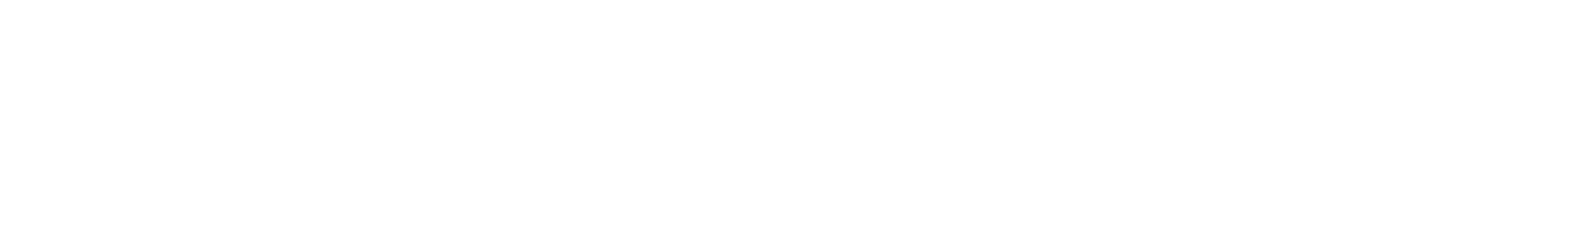 Holmen
 logo grand pour les fonds sombres (PNG transparent)